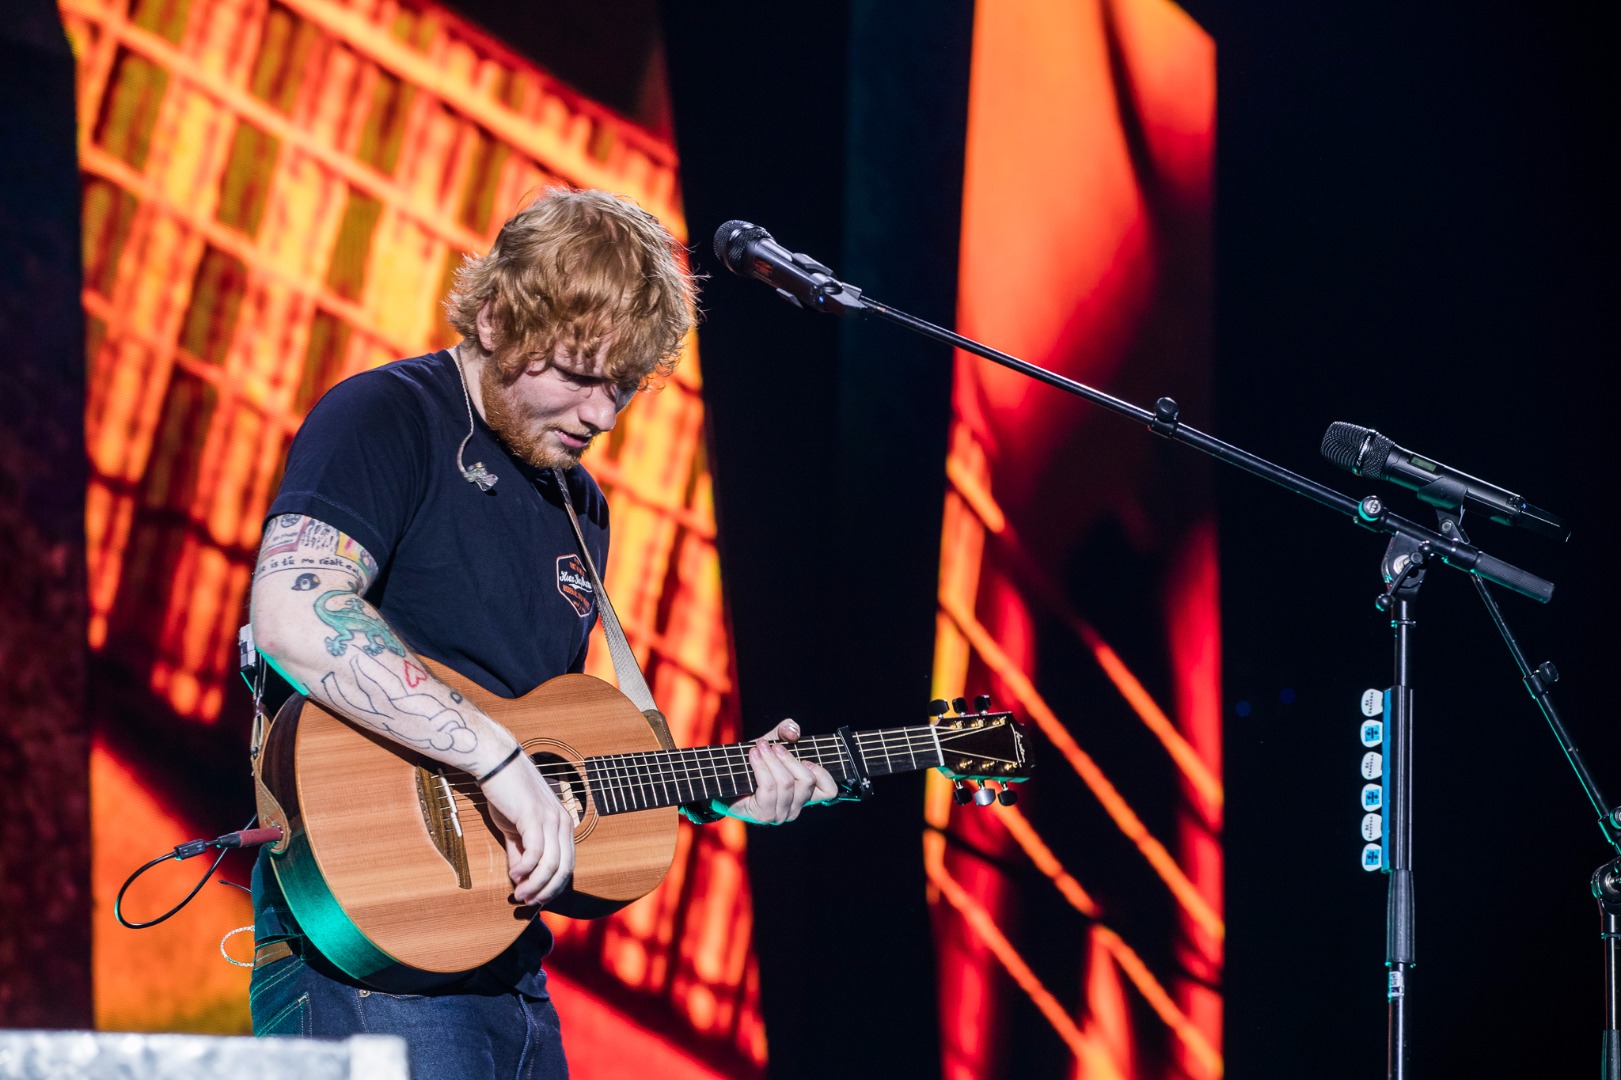 Ed Sheeran Live in Bangkok 2017